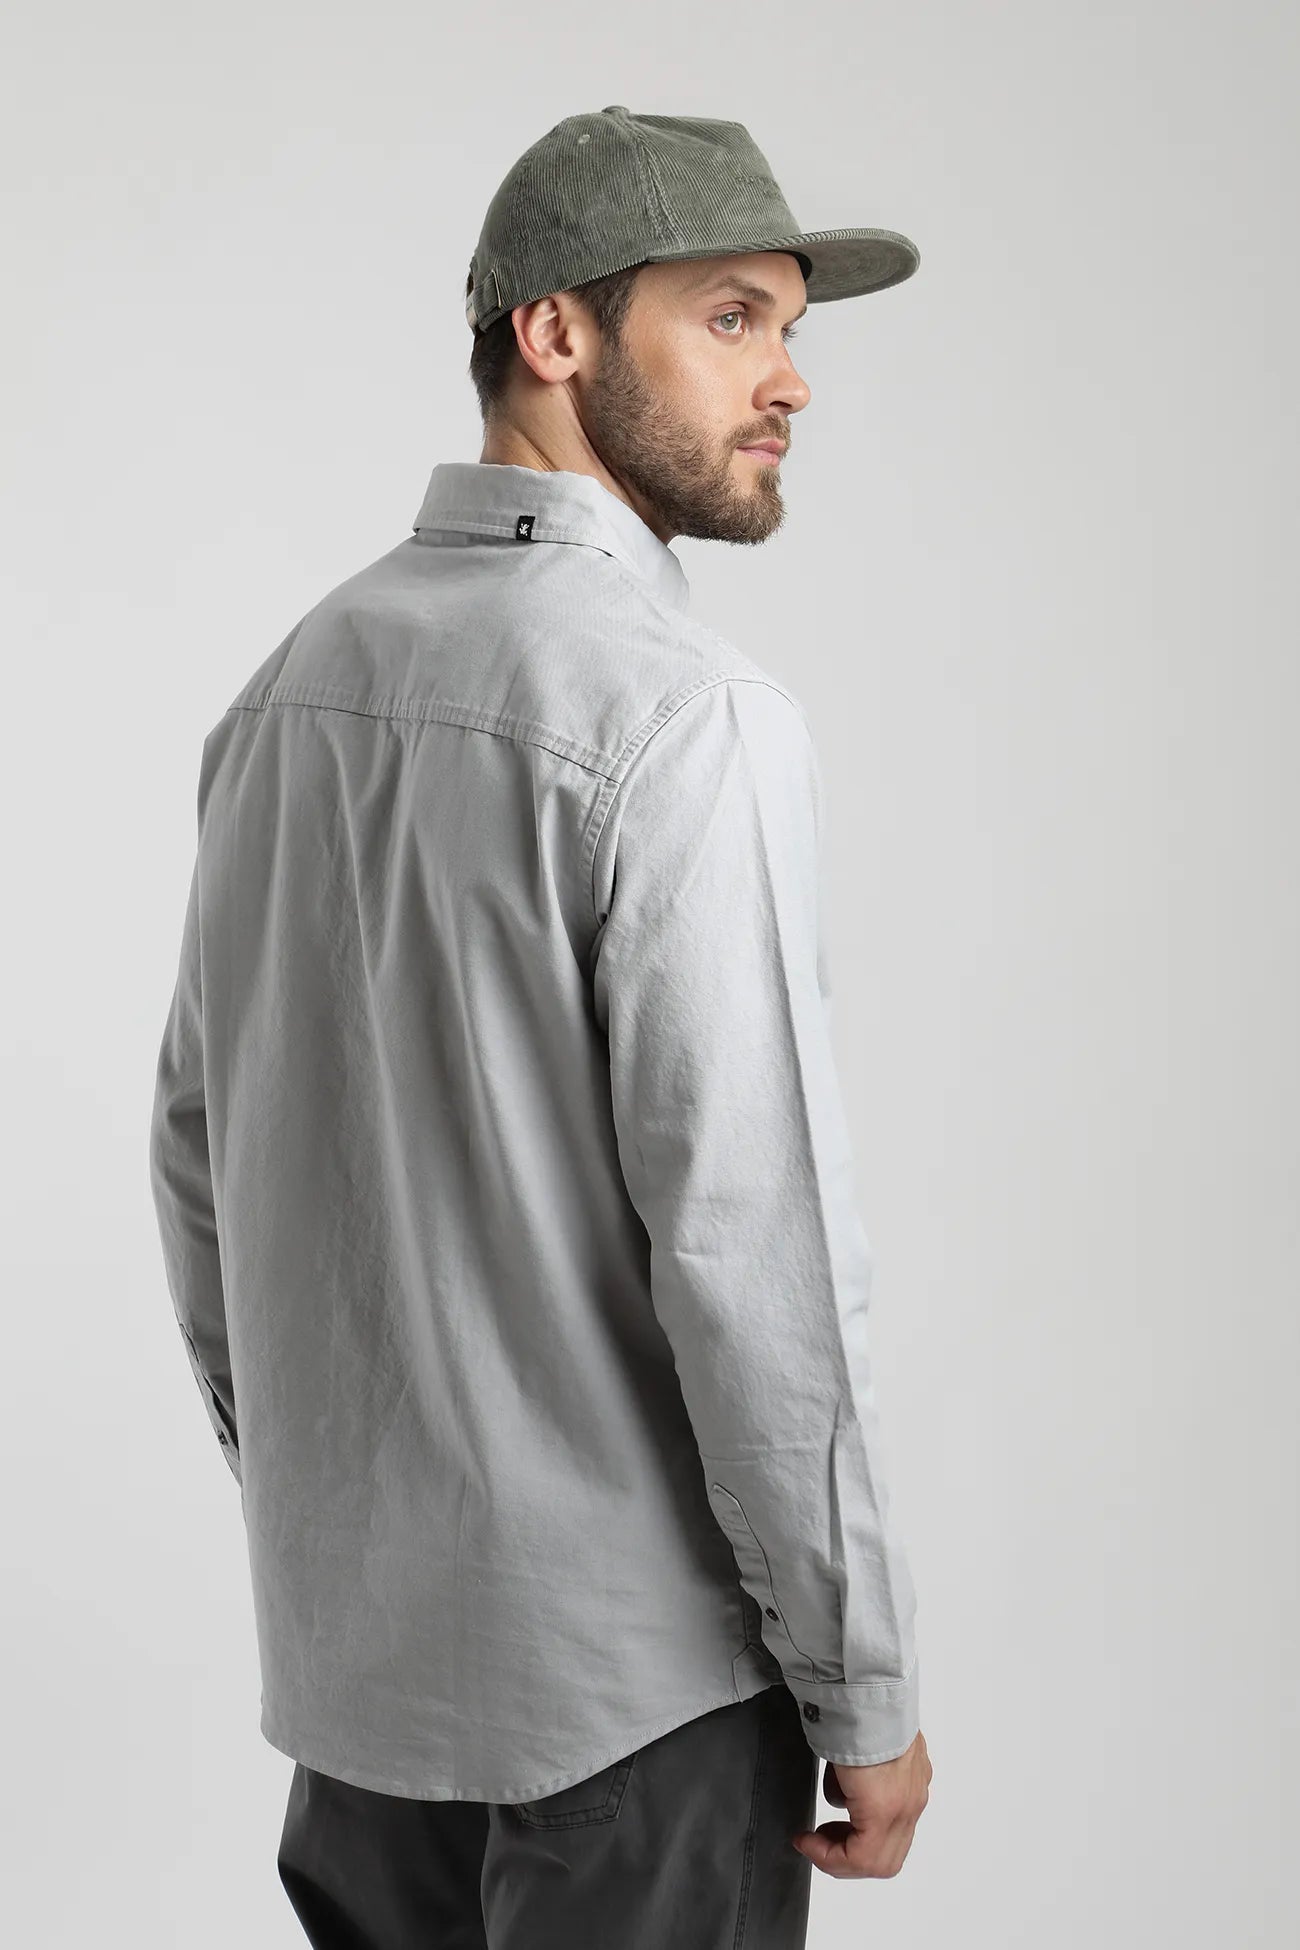 Camisa manga larga Ox gris - Algodón orgánico